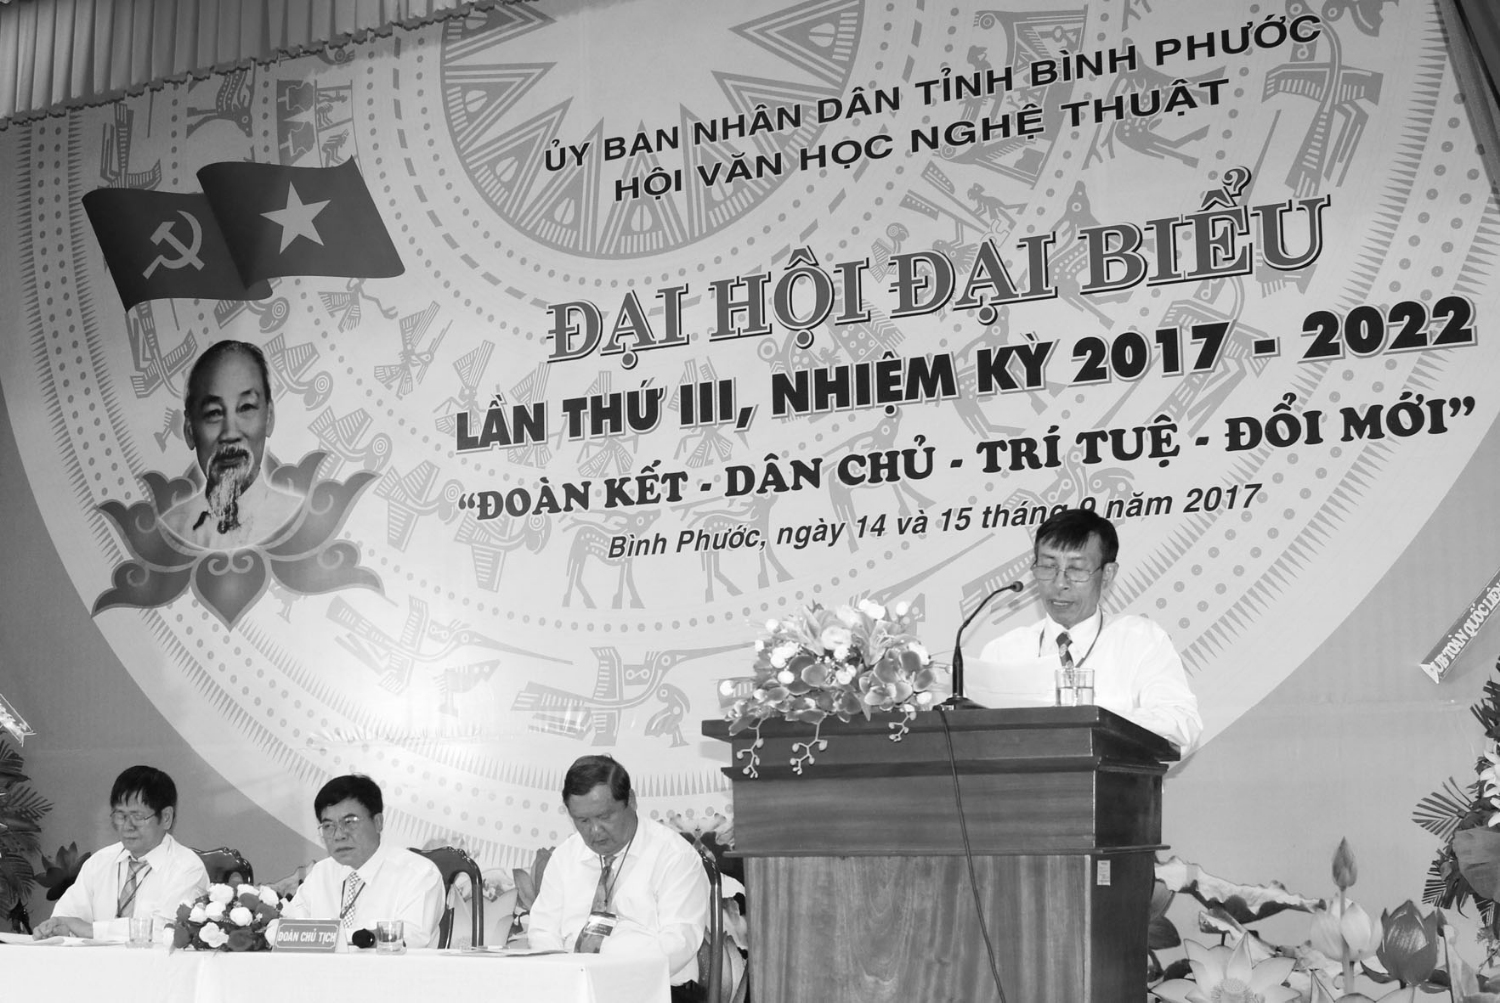 Hội viên Nguyễn Duy Hồng đọc tham luận tại Đại hội